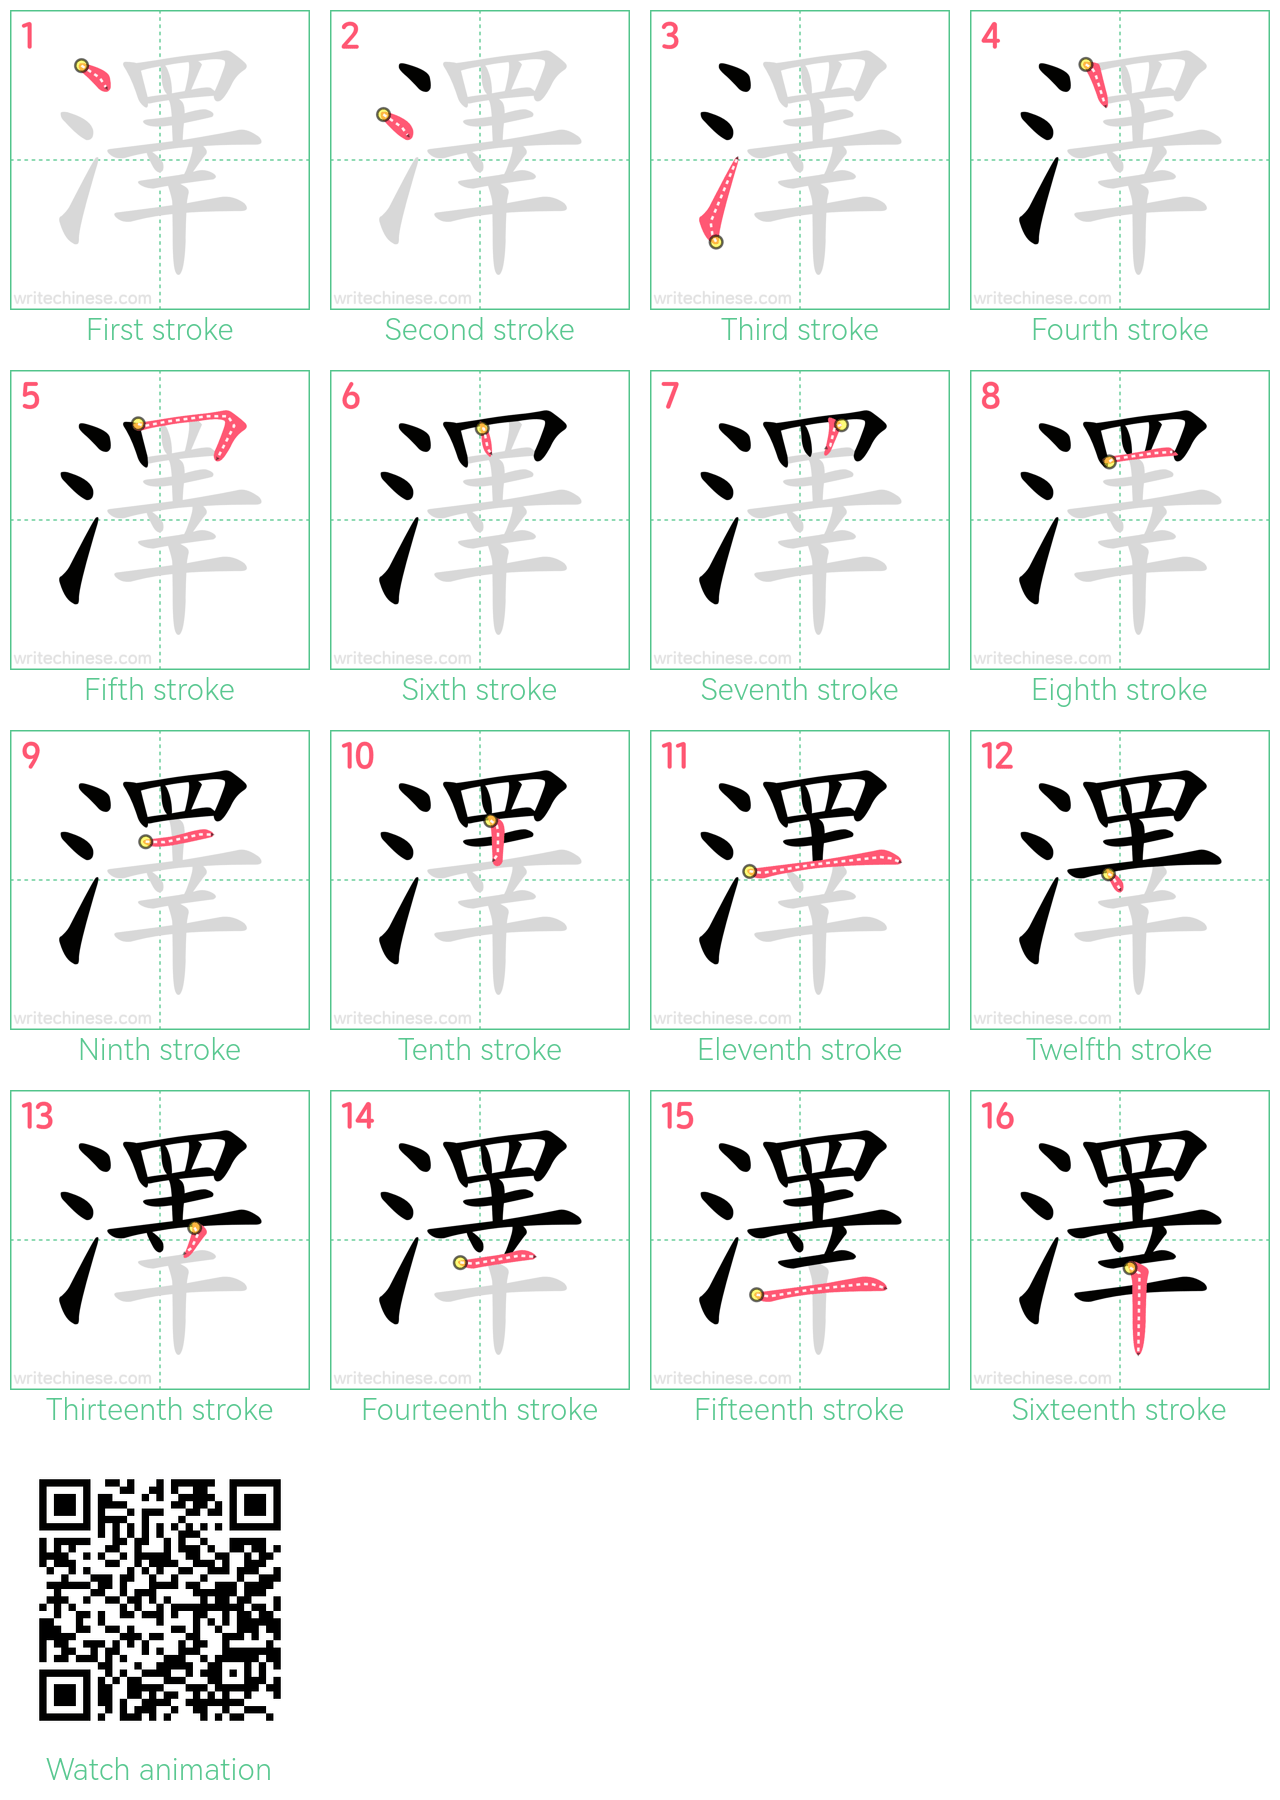 澤 step-by-step stroke order diagrams